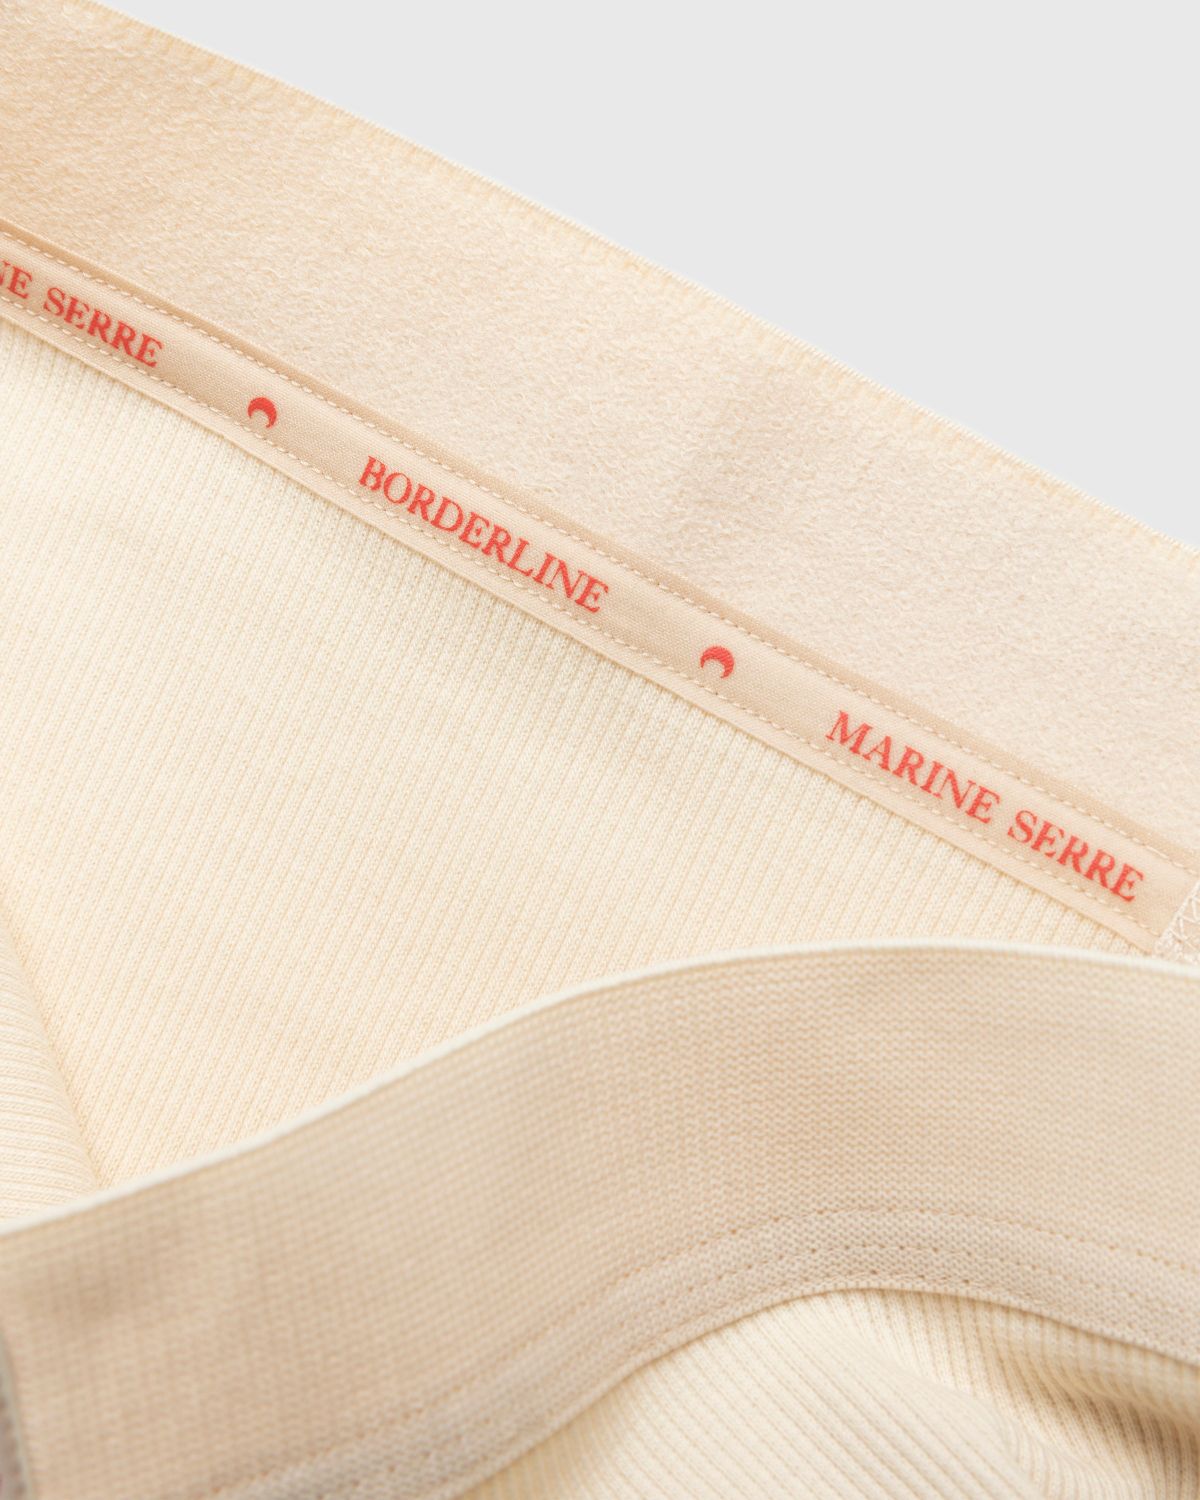 Marine Serre – Organic Cotton Ribbed Boxers Beige - Underwear - Beige - Image 3